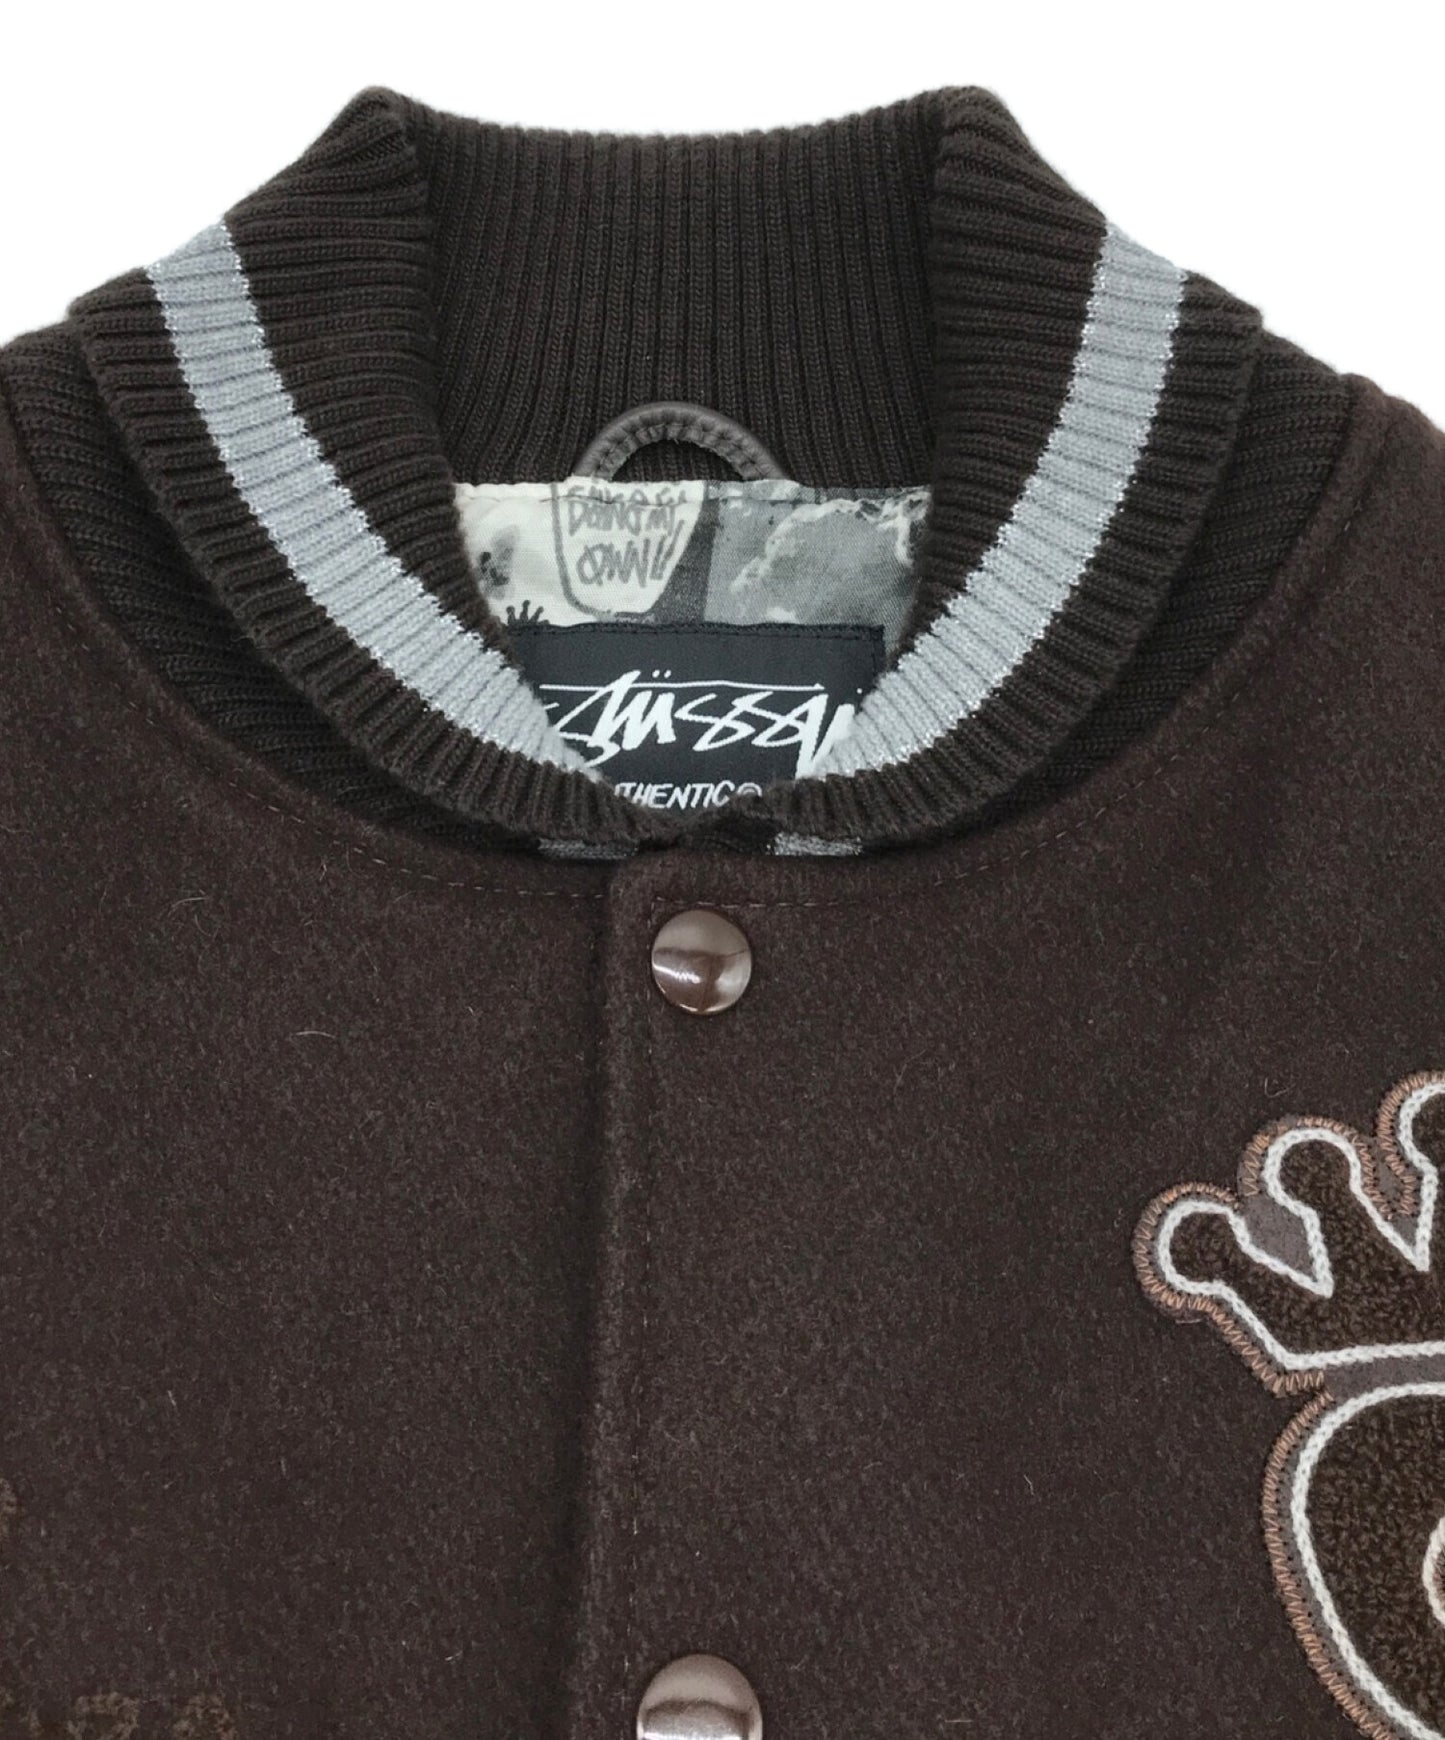 [Pre-owned] stussy Leather Varsity Jacket Varsity Jacket Jacket Blouson 26552